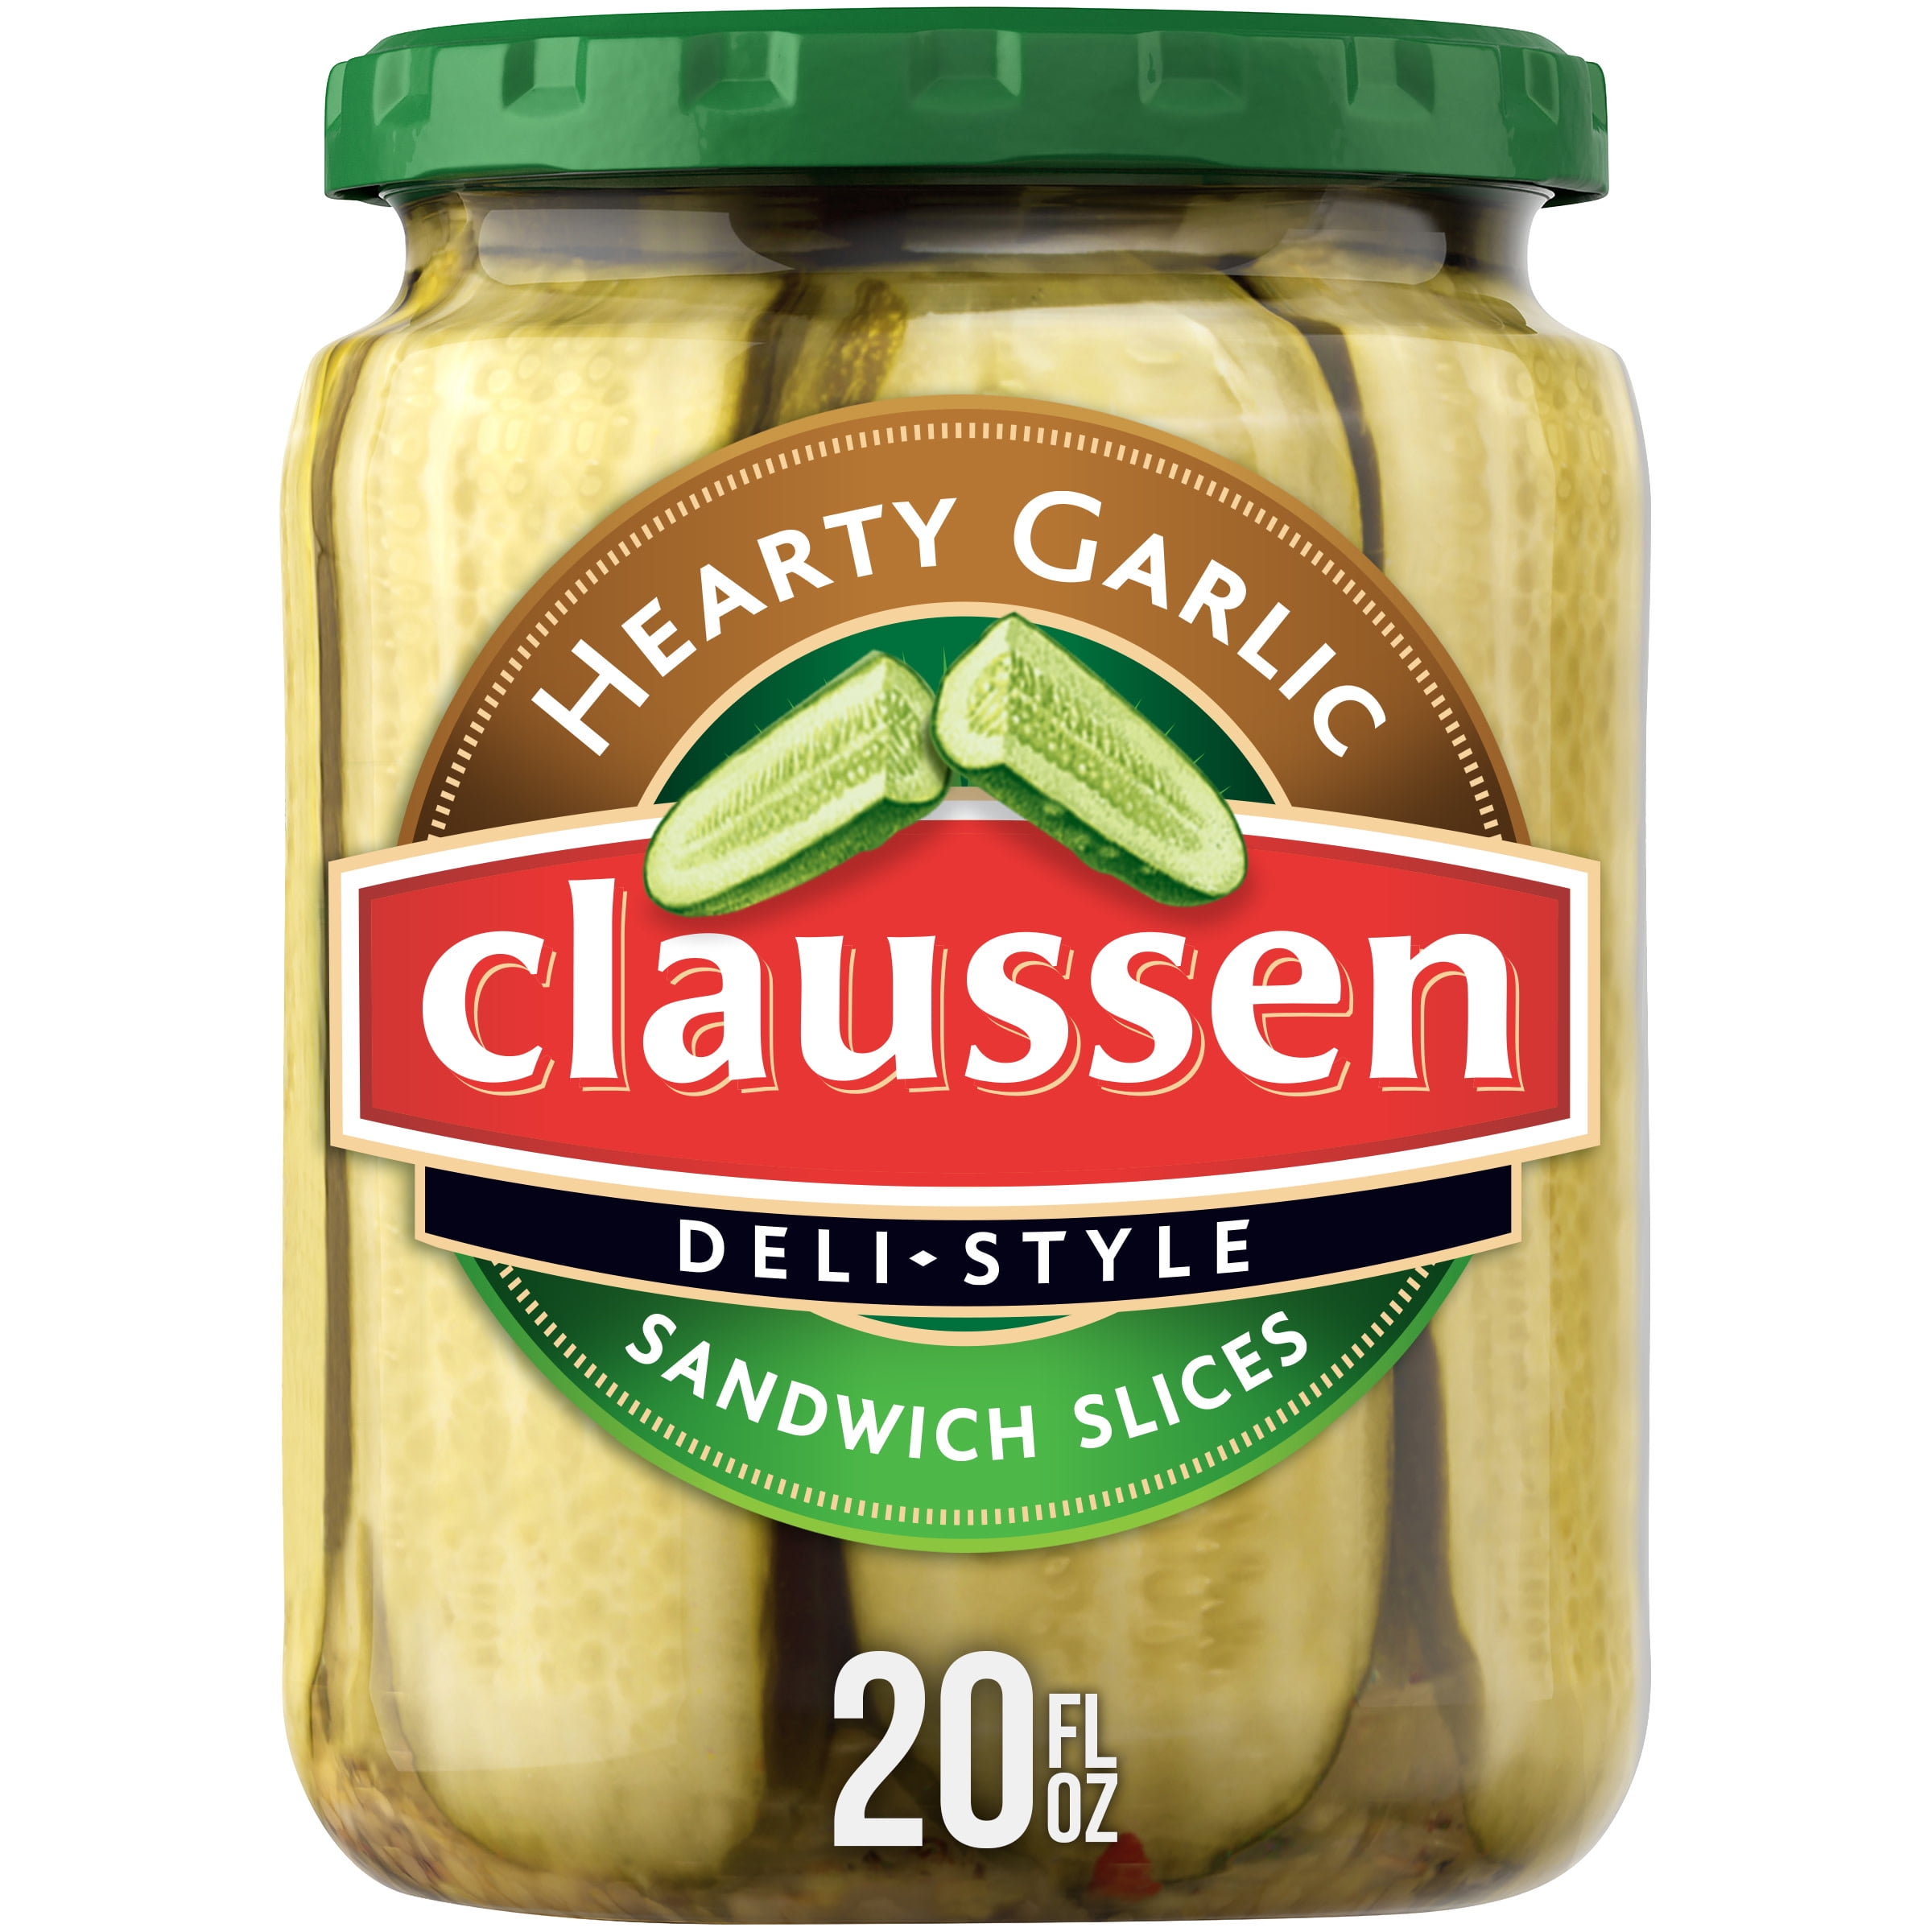 Claussen pickles walmart